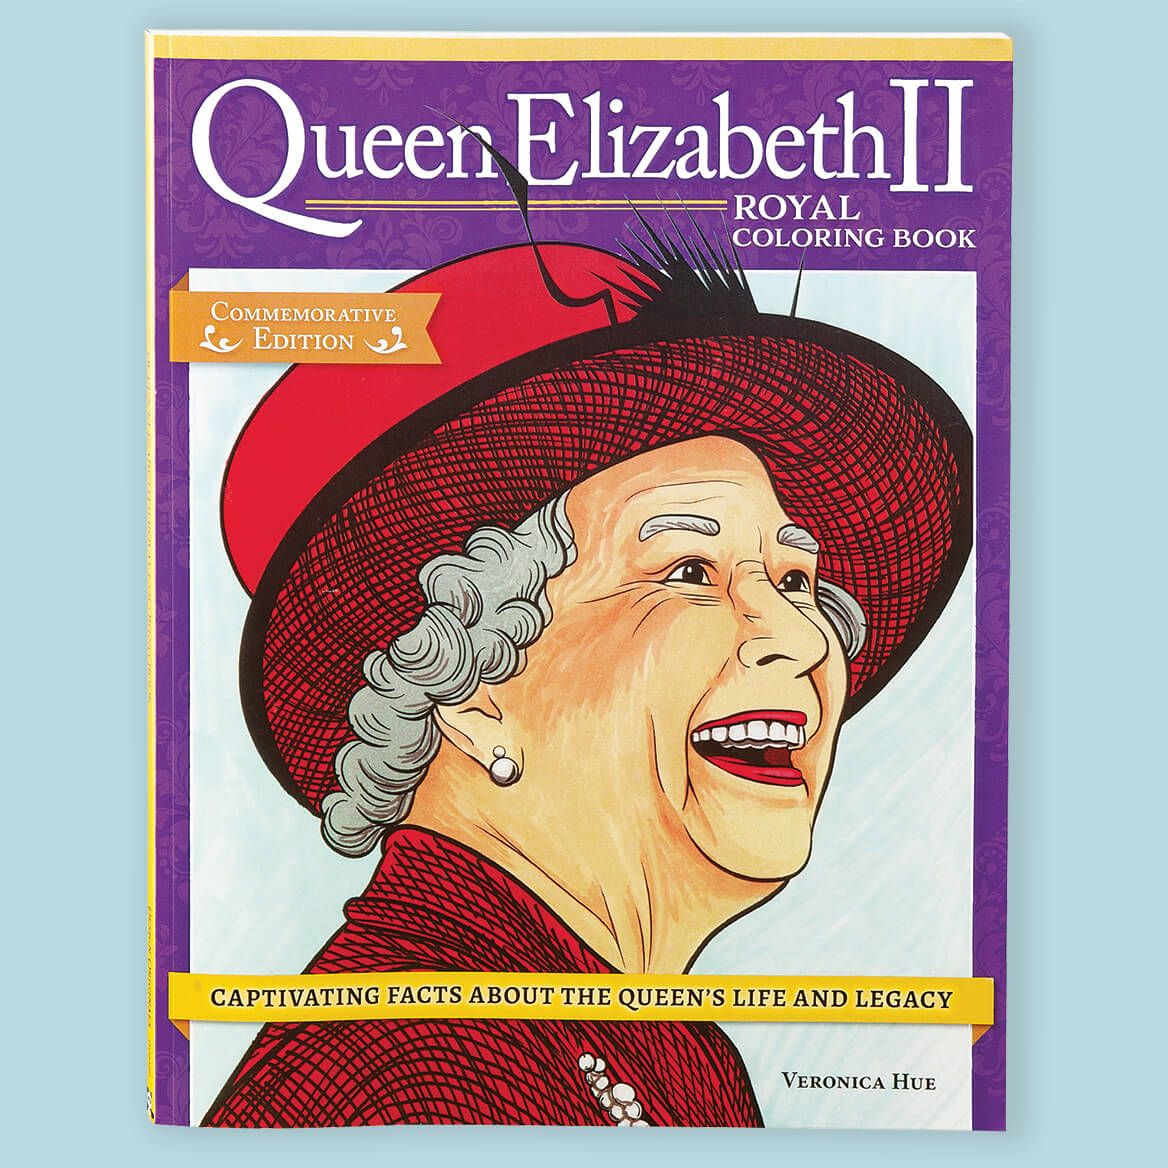 Queen Elizabeth II Royal Coloring Book + '-' + 376399